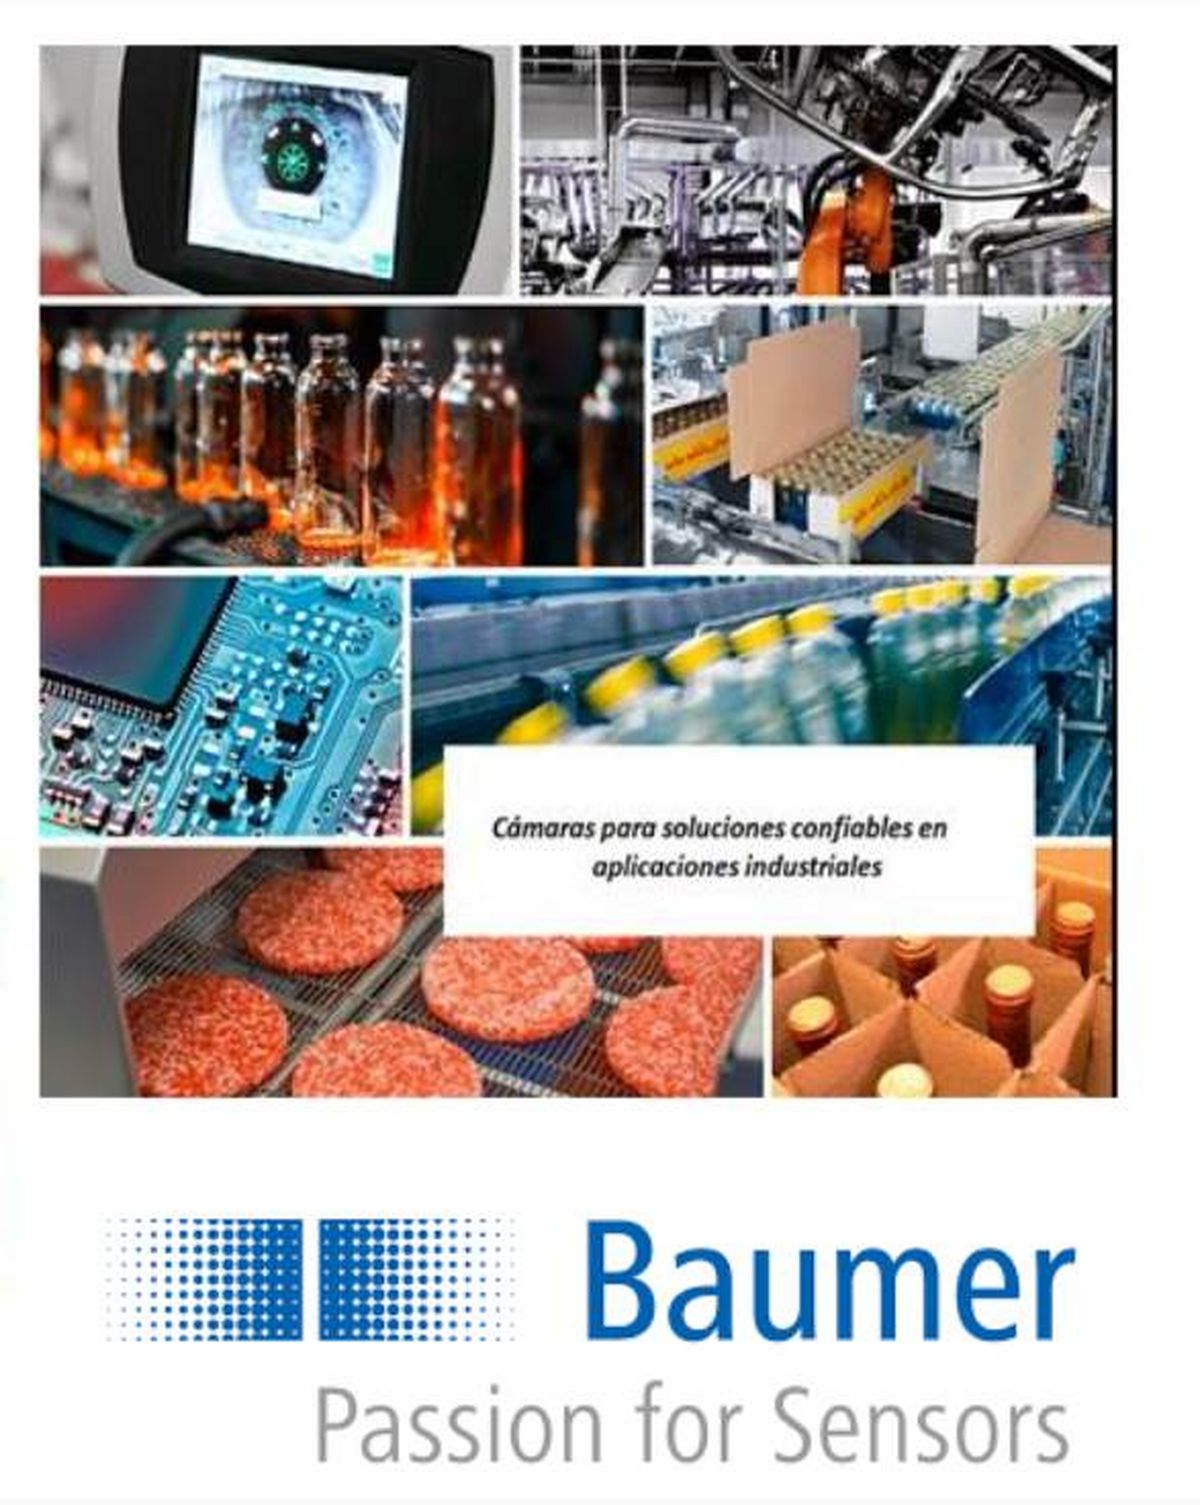 El desafío del procesamiento de imágenes y la solución con Baumer: cámaras industriales